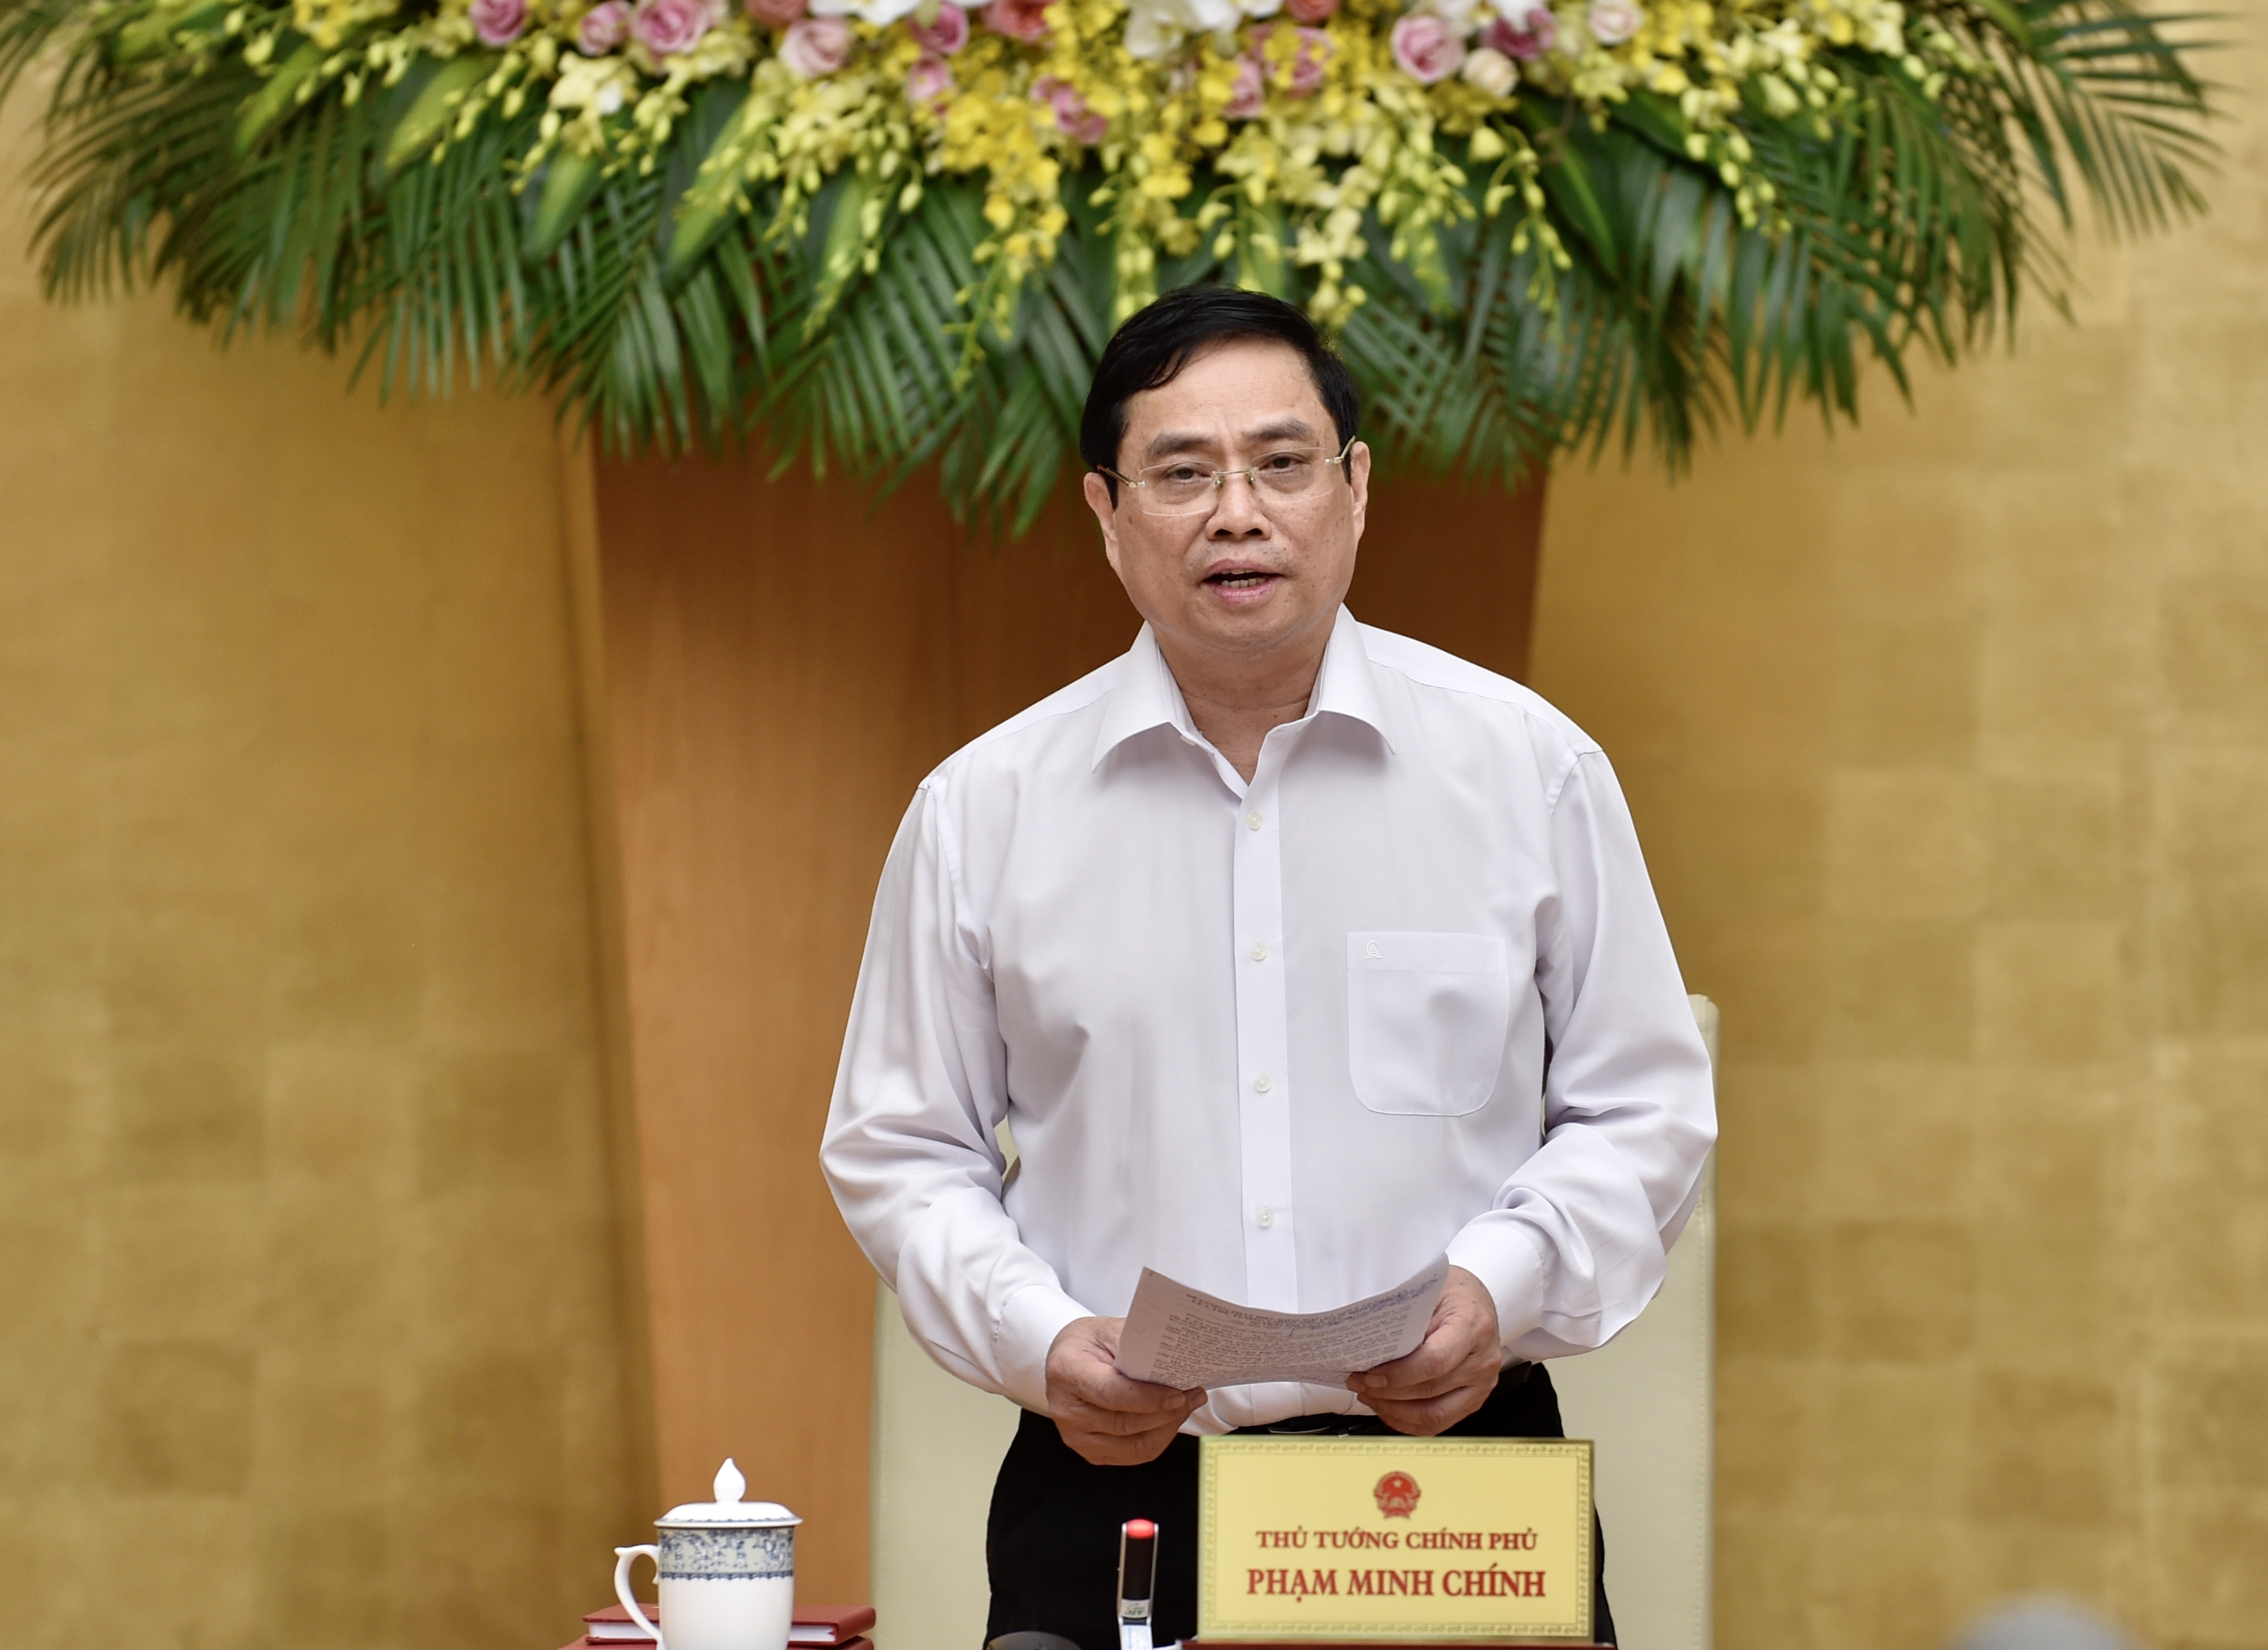 Thủ tướng Chính phủ Phạm Minh Chính phát biểu chỉ đạo tại phiên họp. Ảnh: NHẬT BẮC